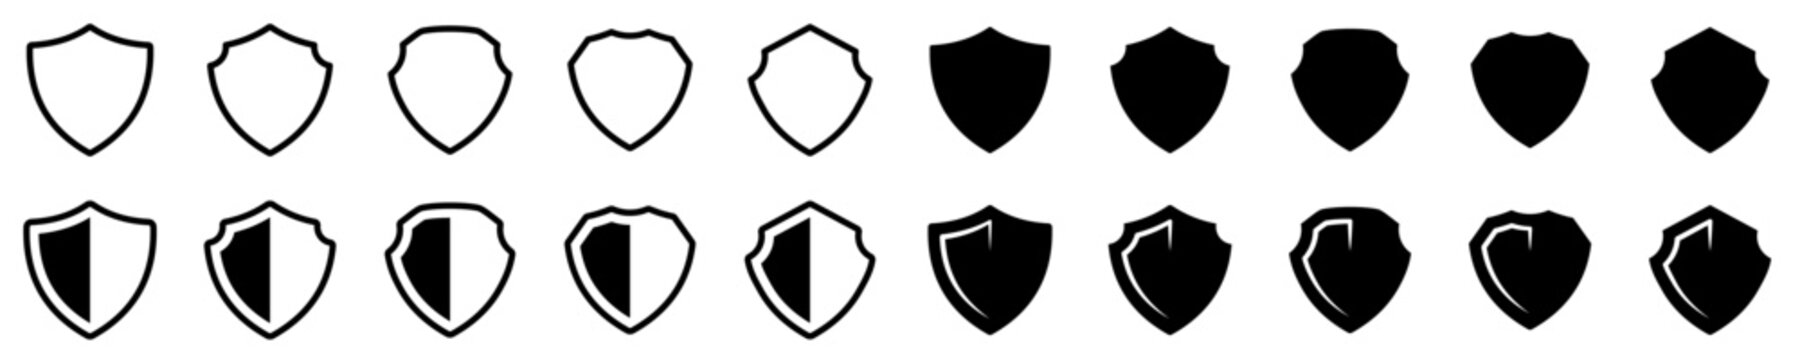 Conjunto de iconos de escudo de protección. Antivirus. Concepto de tecnología, protección y seguridad. Escudo protector de varios estilos. Ilustración vectorial